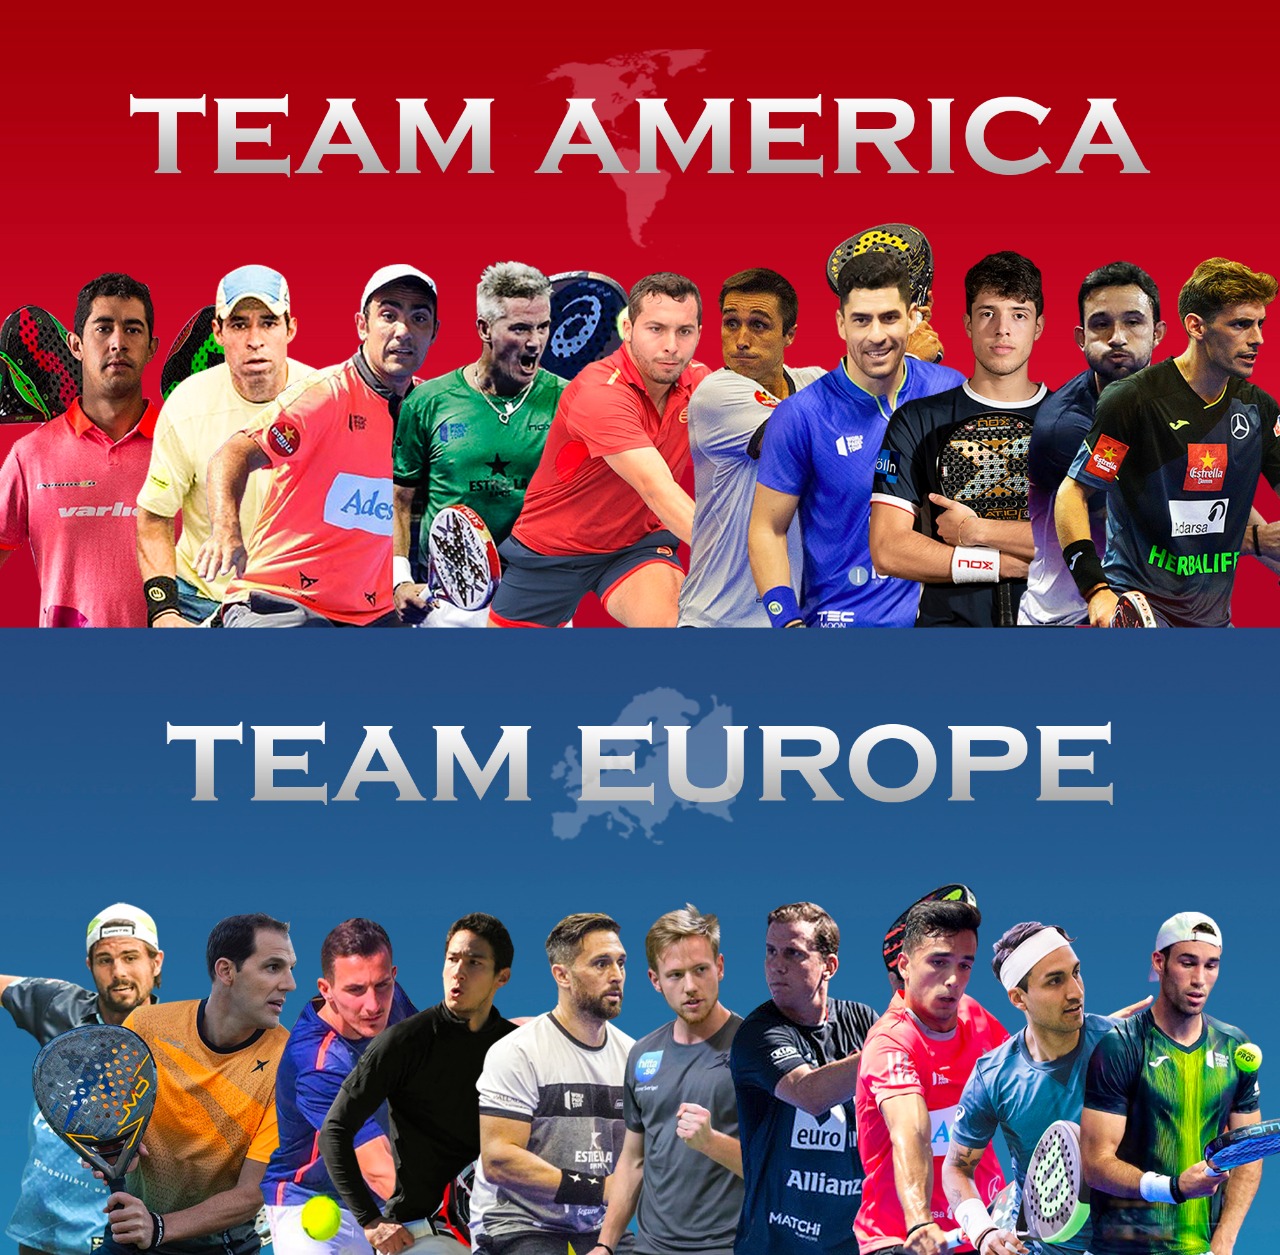 Encuentro América vs Europa de pádel 2021